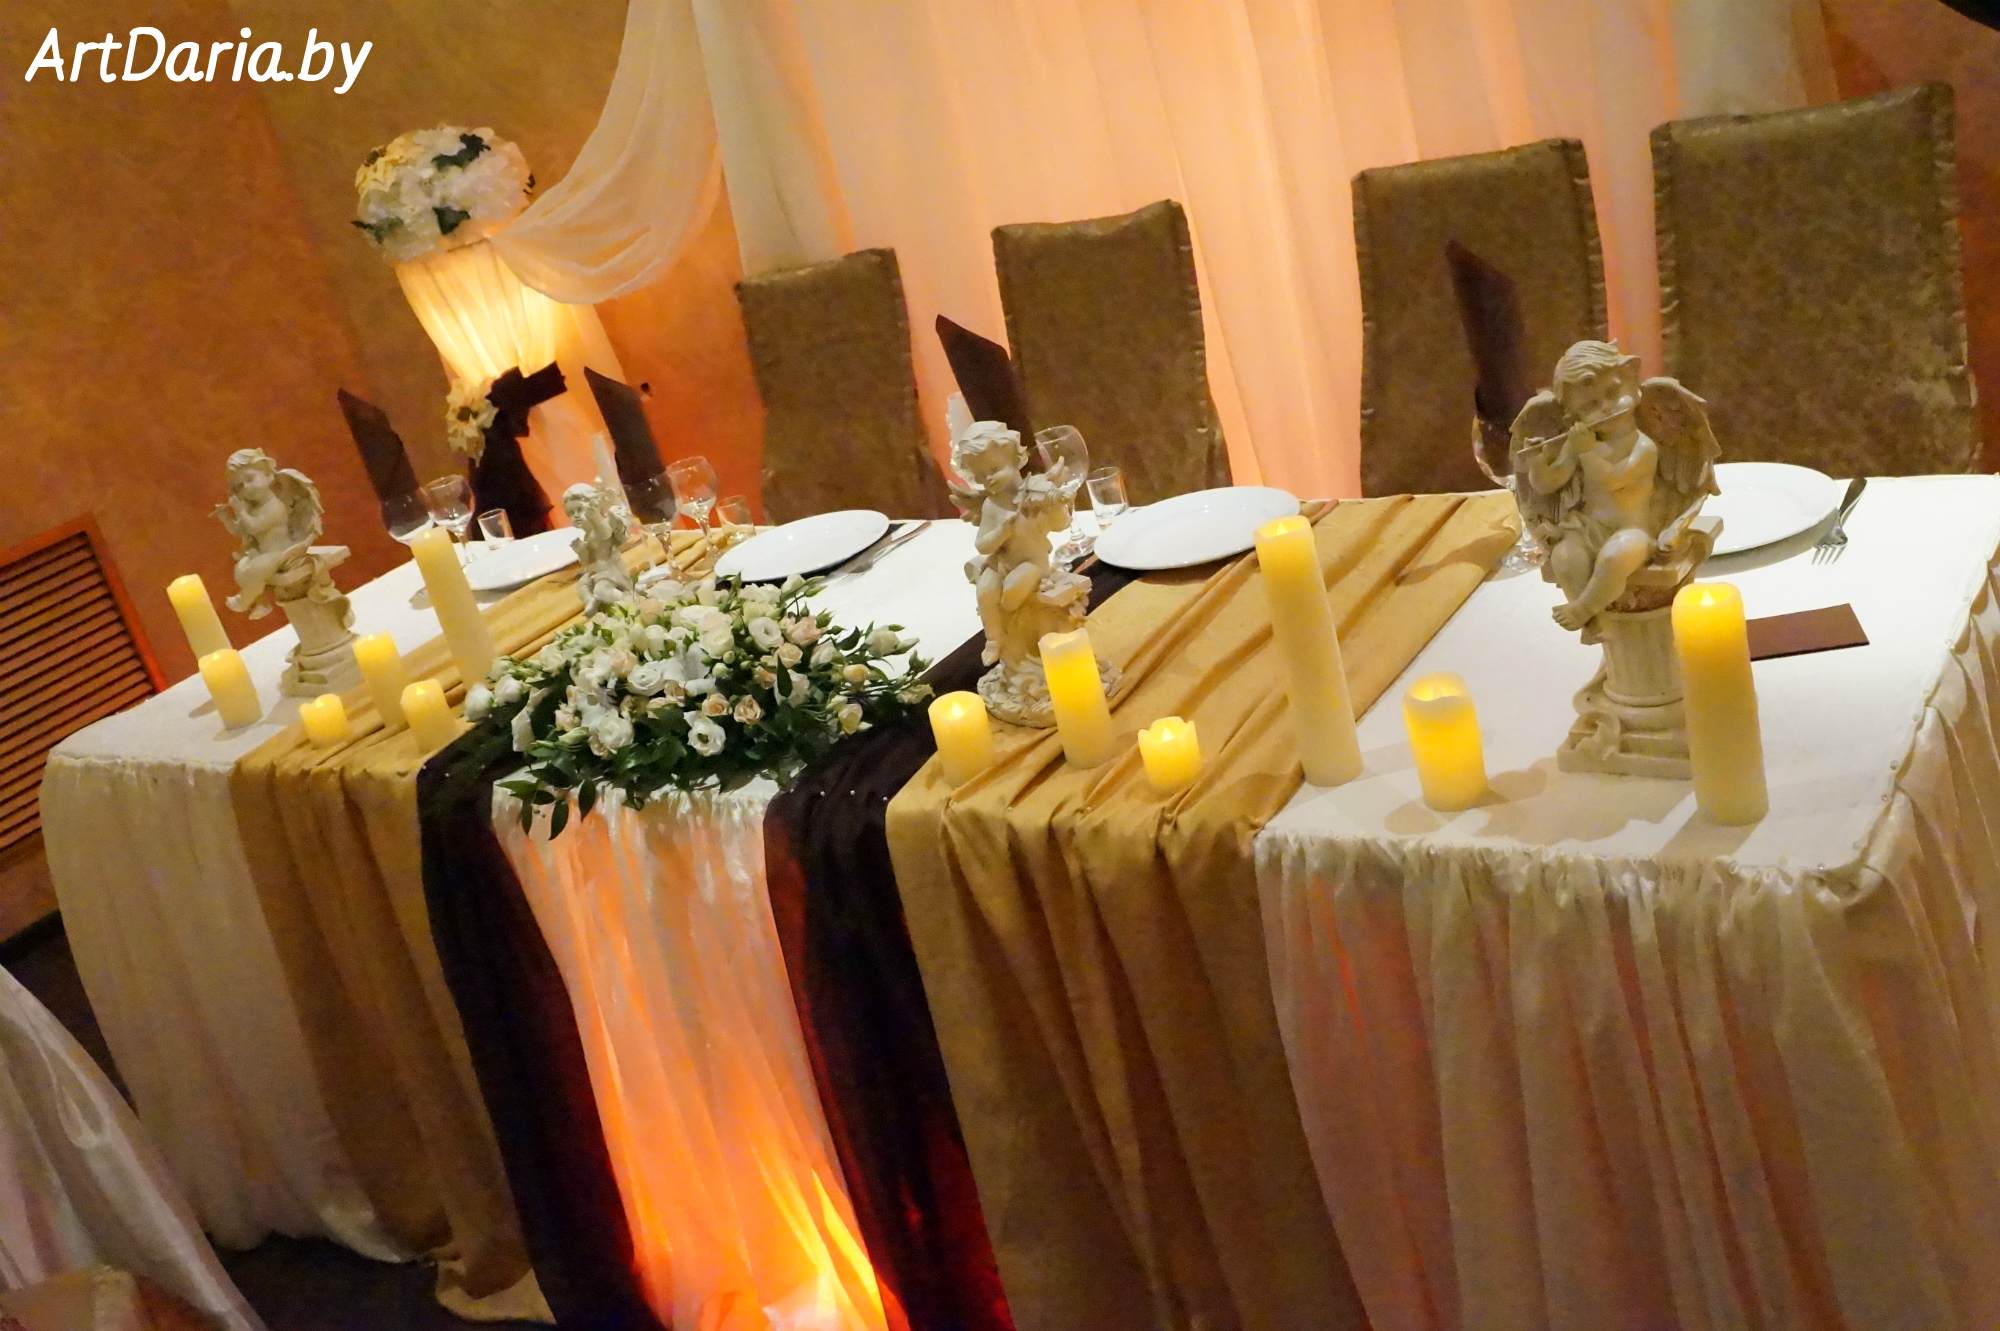 Искусственные свечи в аренду, Минск, низкие цены. Для свадебного декора: для оформления стола молодоженов, столика для дарения, для декора свадебного зала.